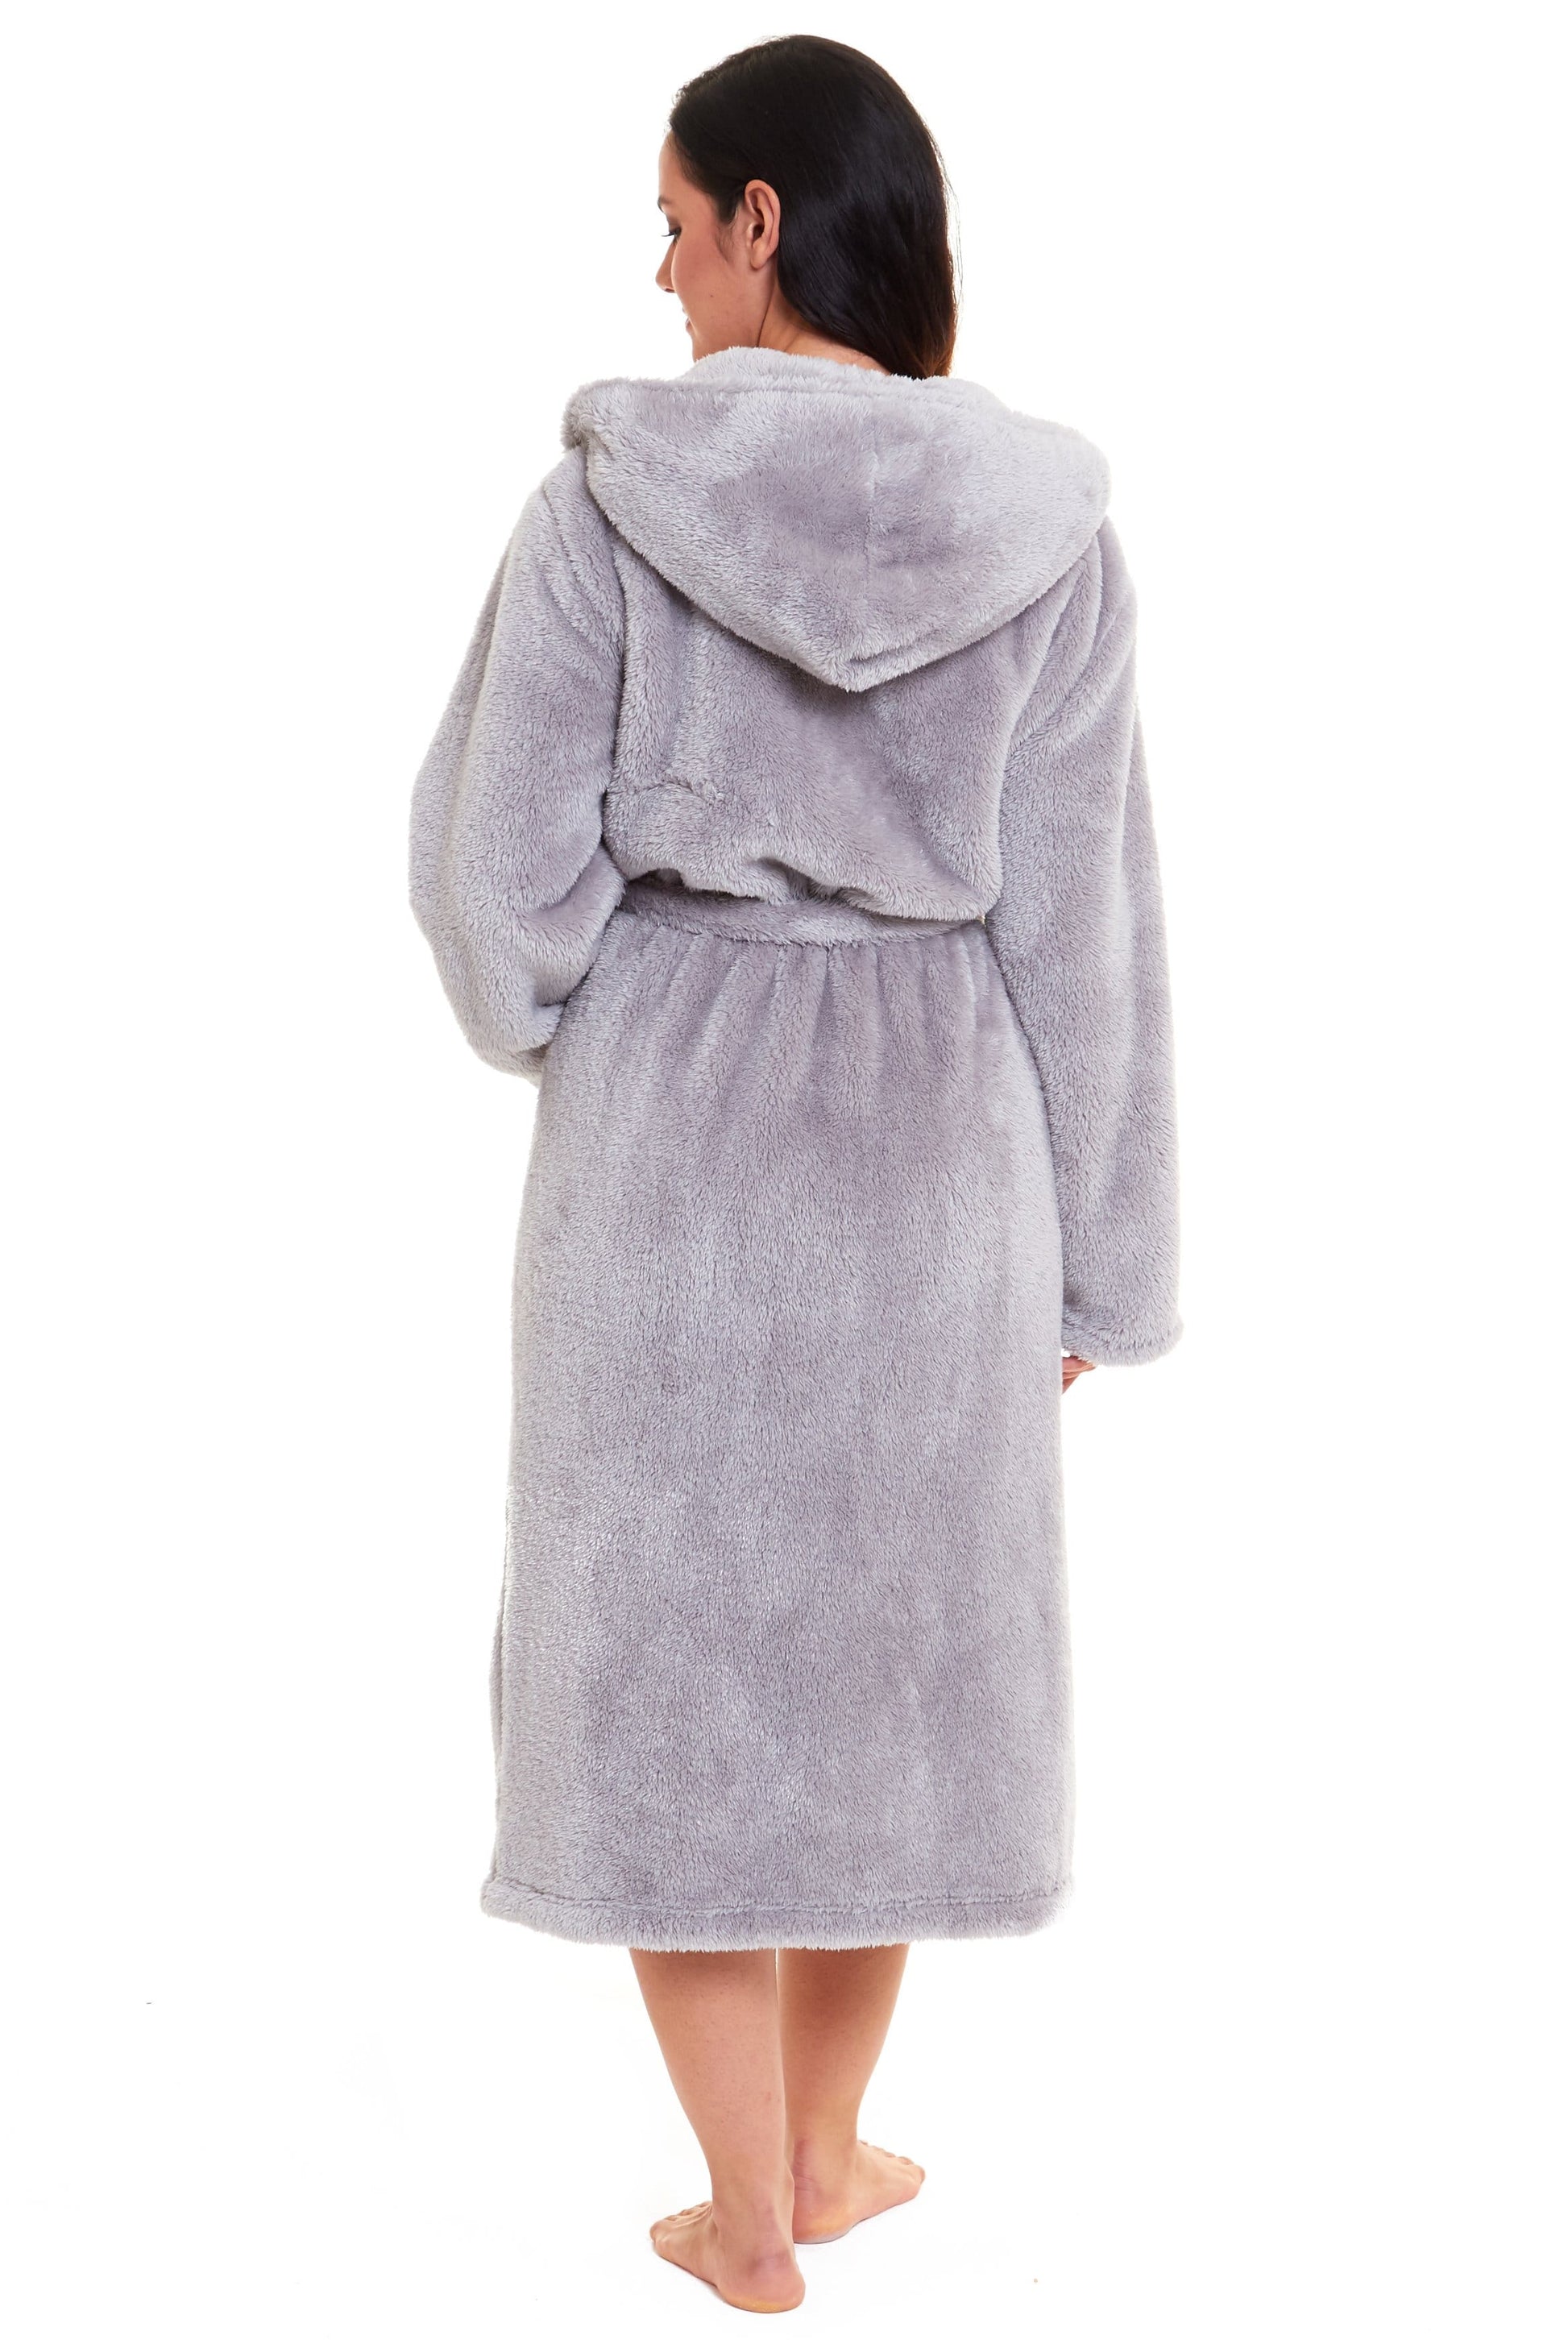 Grey Snuggle Velvet Touch Fleece Hooded Robe Dressing Gown Daisy Dreamer Dressing Gown